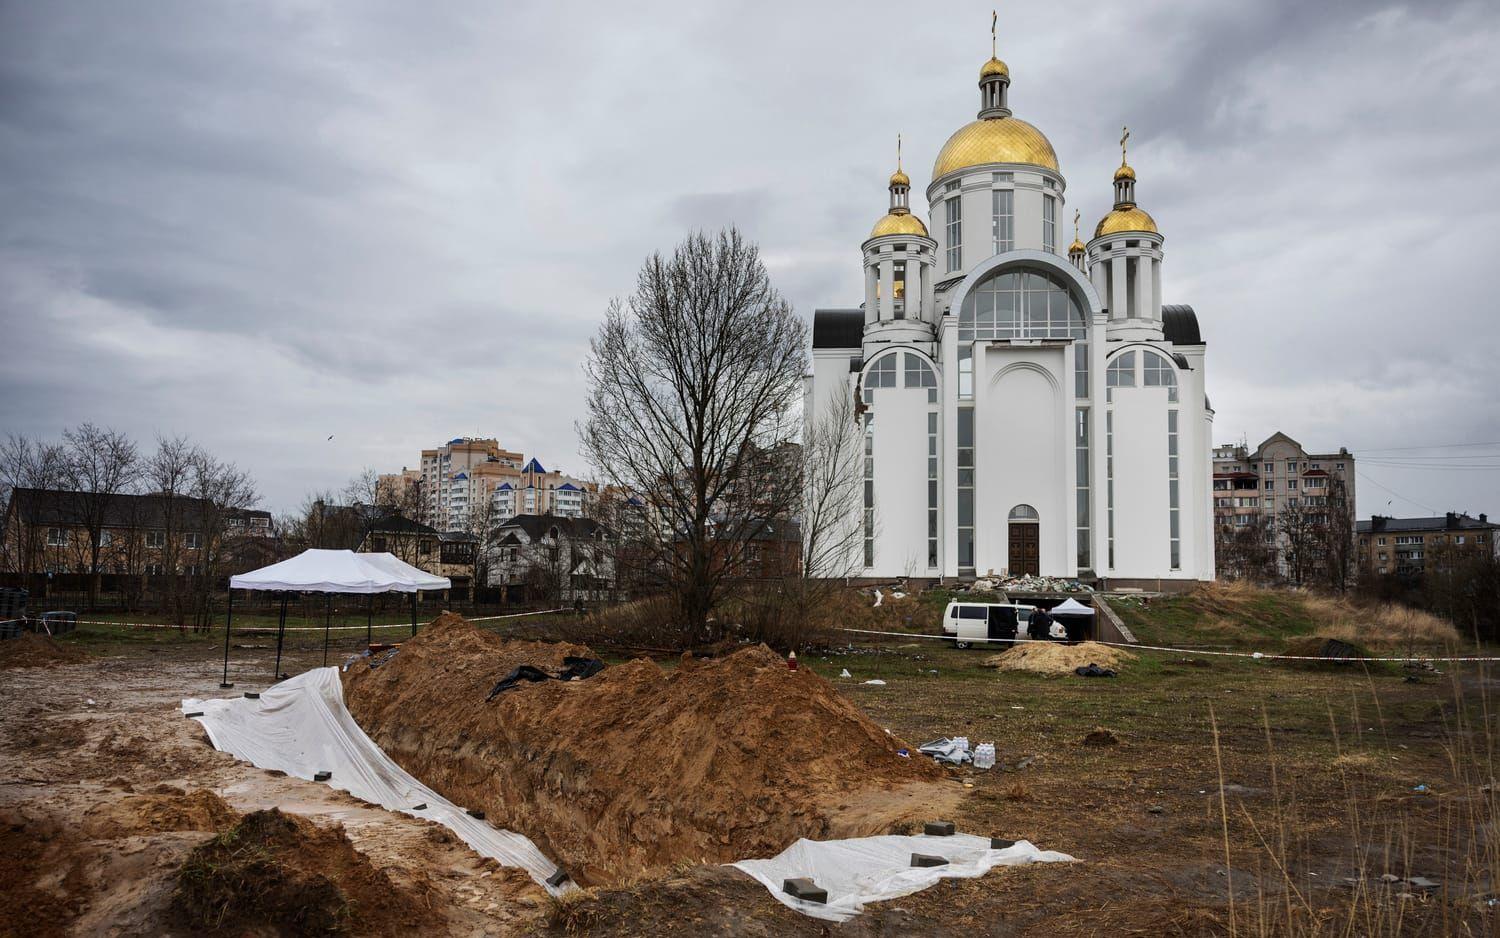 En massgrav med 66 civila kroppar och en rysk soldat hittas vid en kyrka i Butja. Efter att ryssarna lämnat staden framkom att 458 civila människor dödades i staden under ockupationen. 